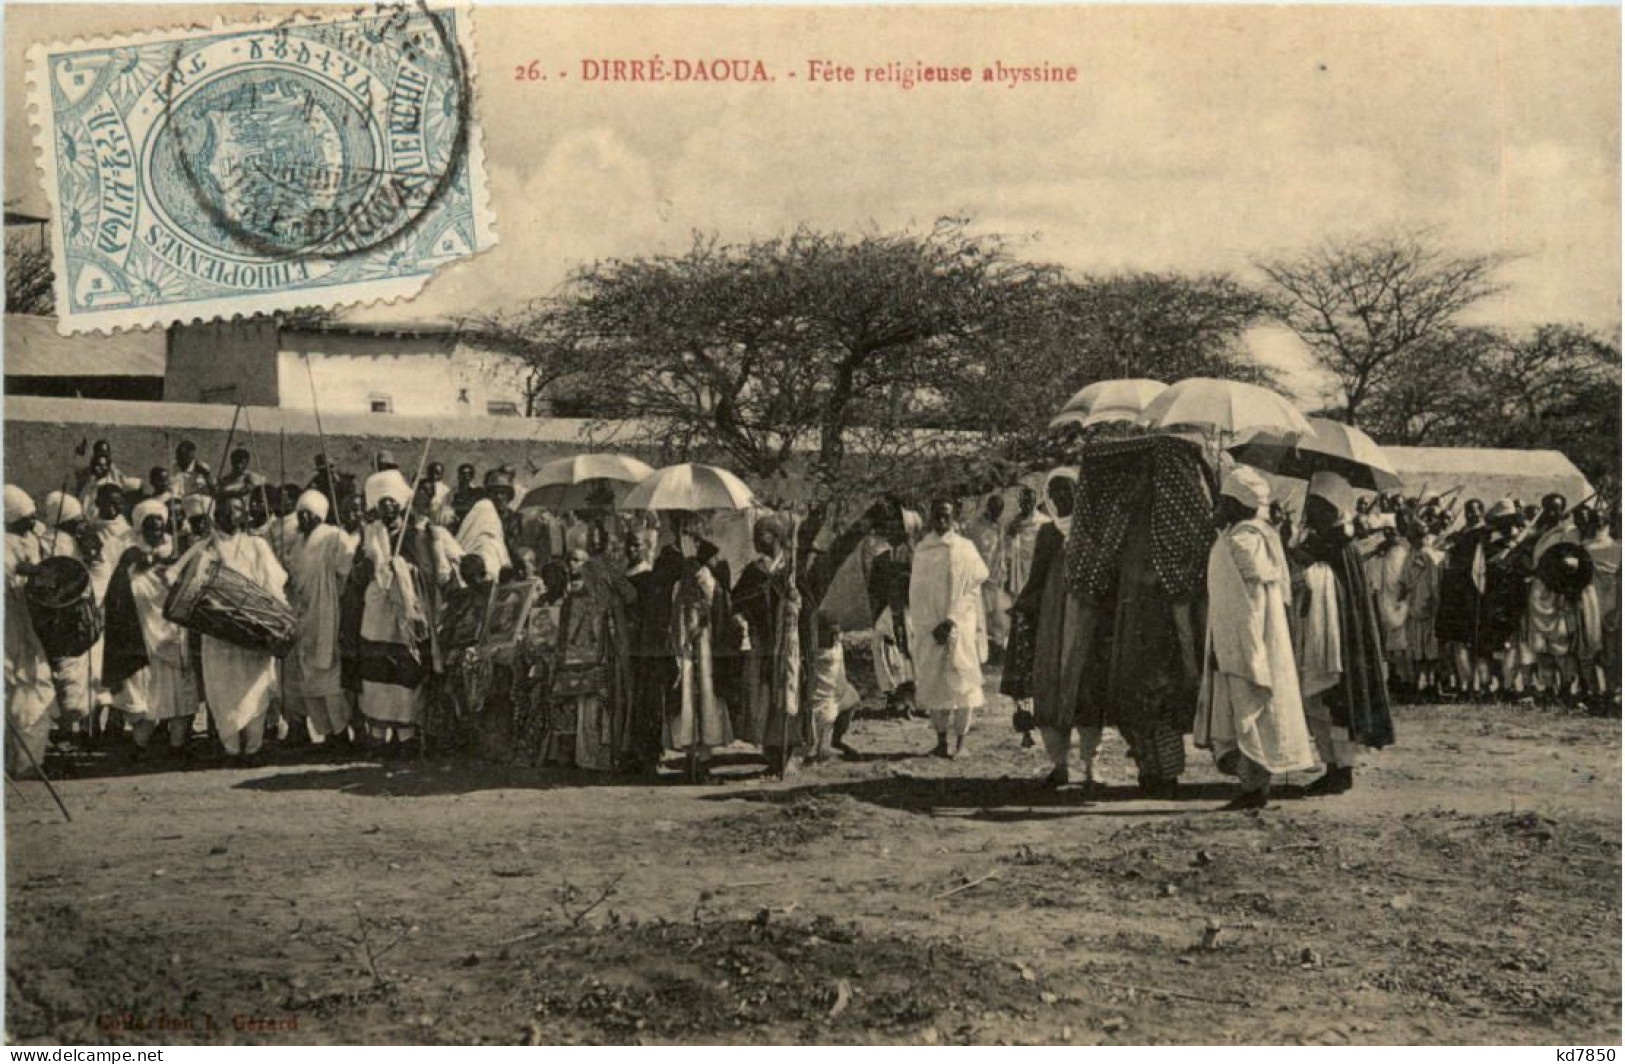 Ethiopie - Dirre-Daoua - Etiopía